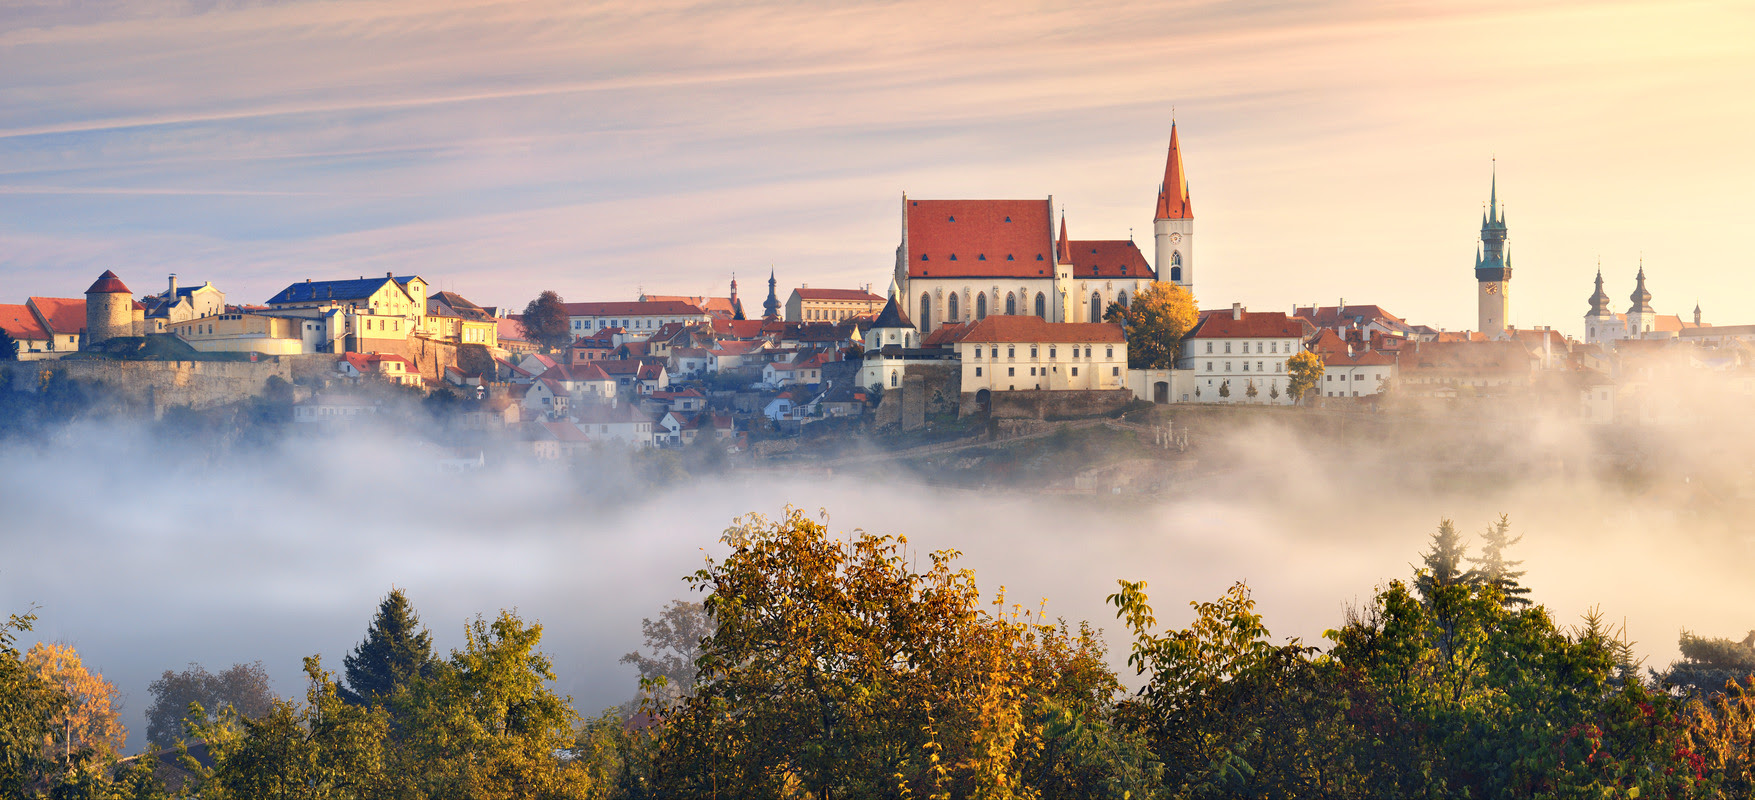 Descubra uma República Tchca sobrenatural que você nunca imaginou